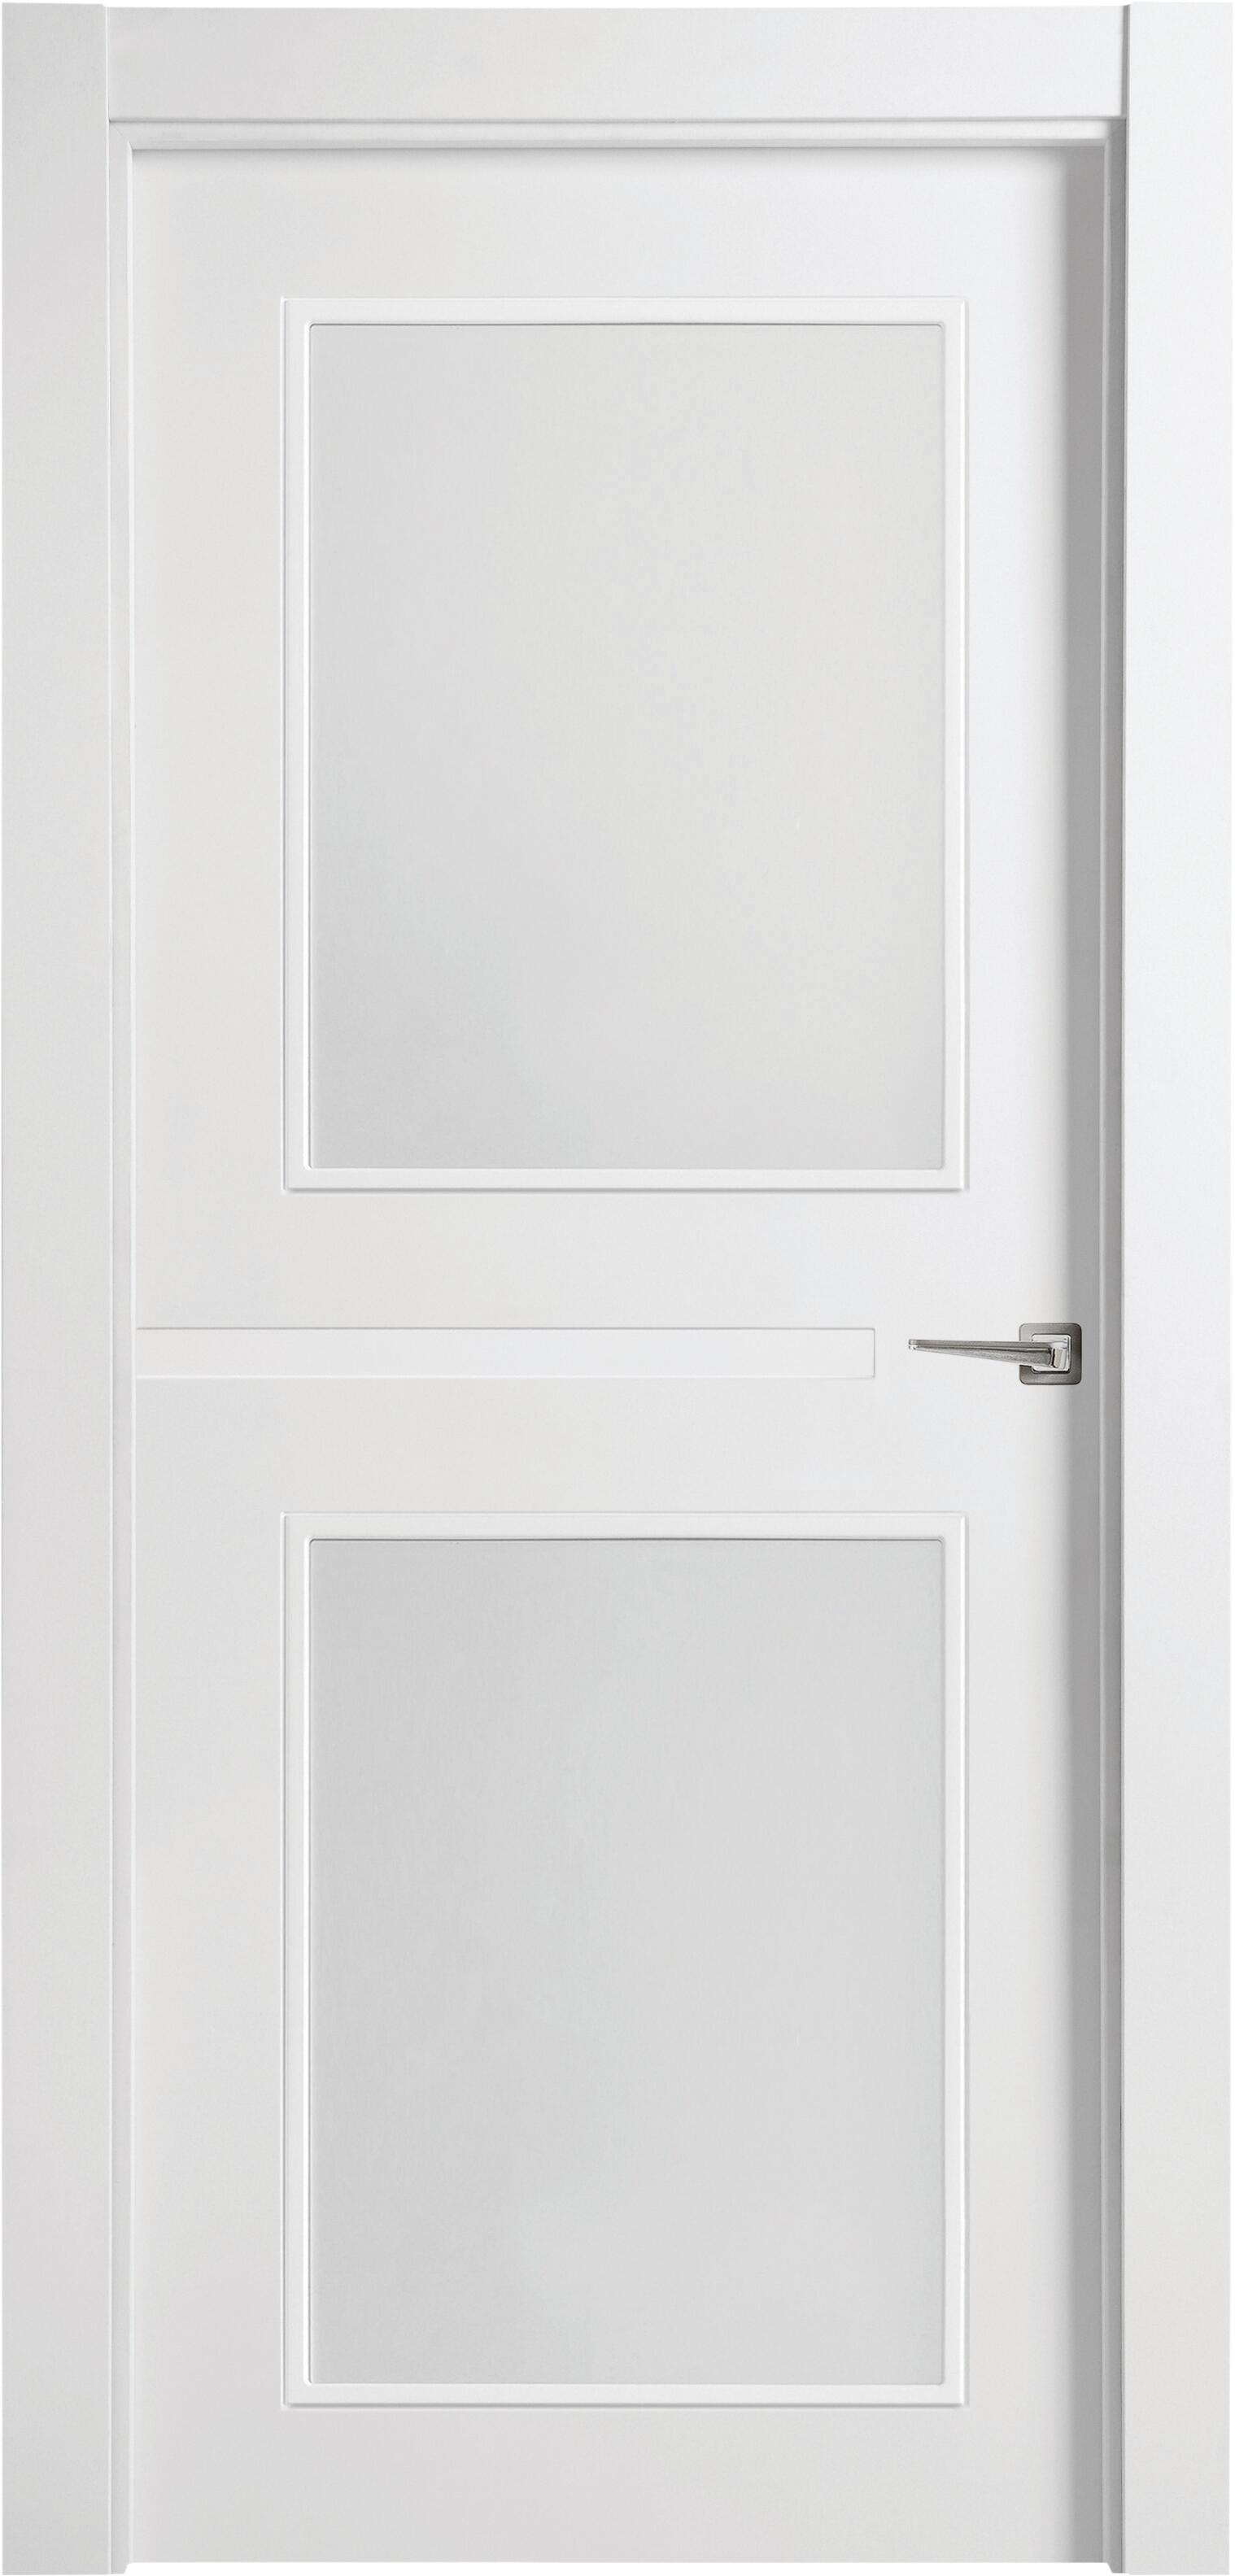 Puerta denver blanco apertura izquierda con cristal de 72,5cm